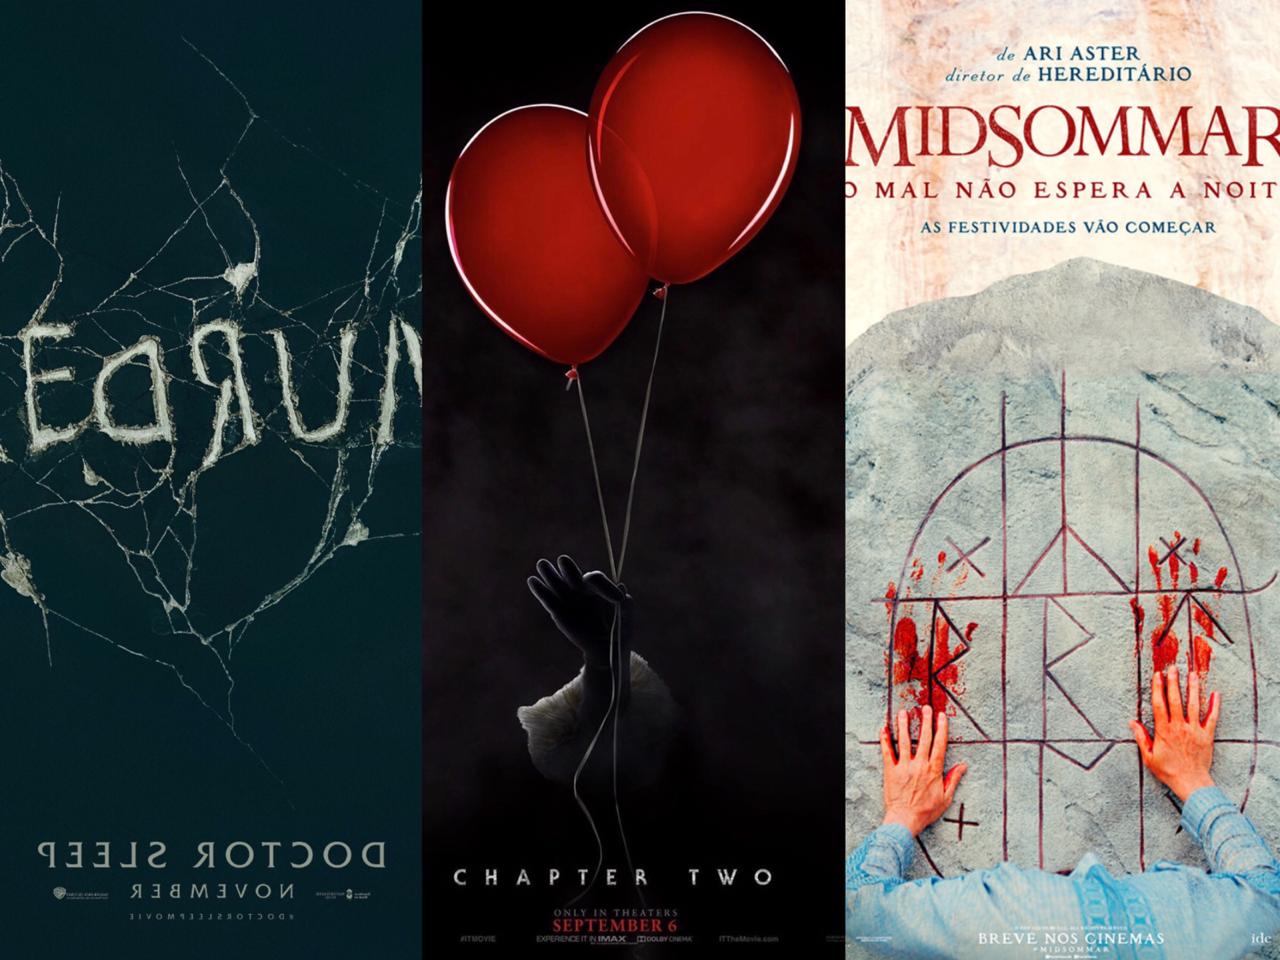 CINEMA | Os filmes de terror mais aguardados no 2º semestre de 2019!